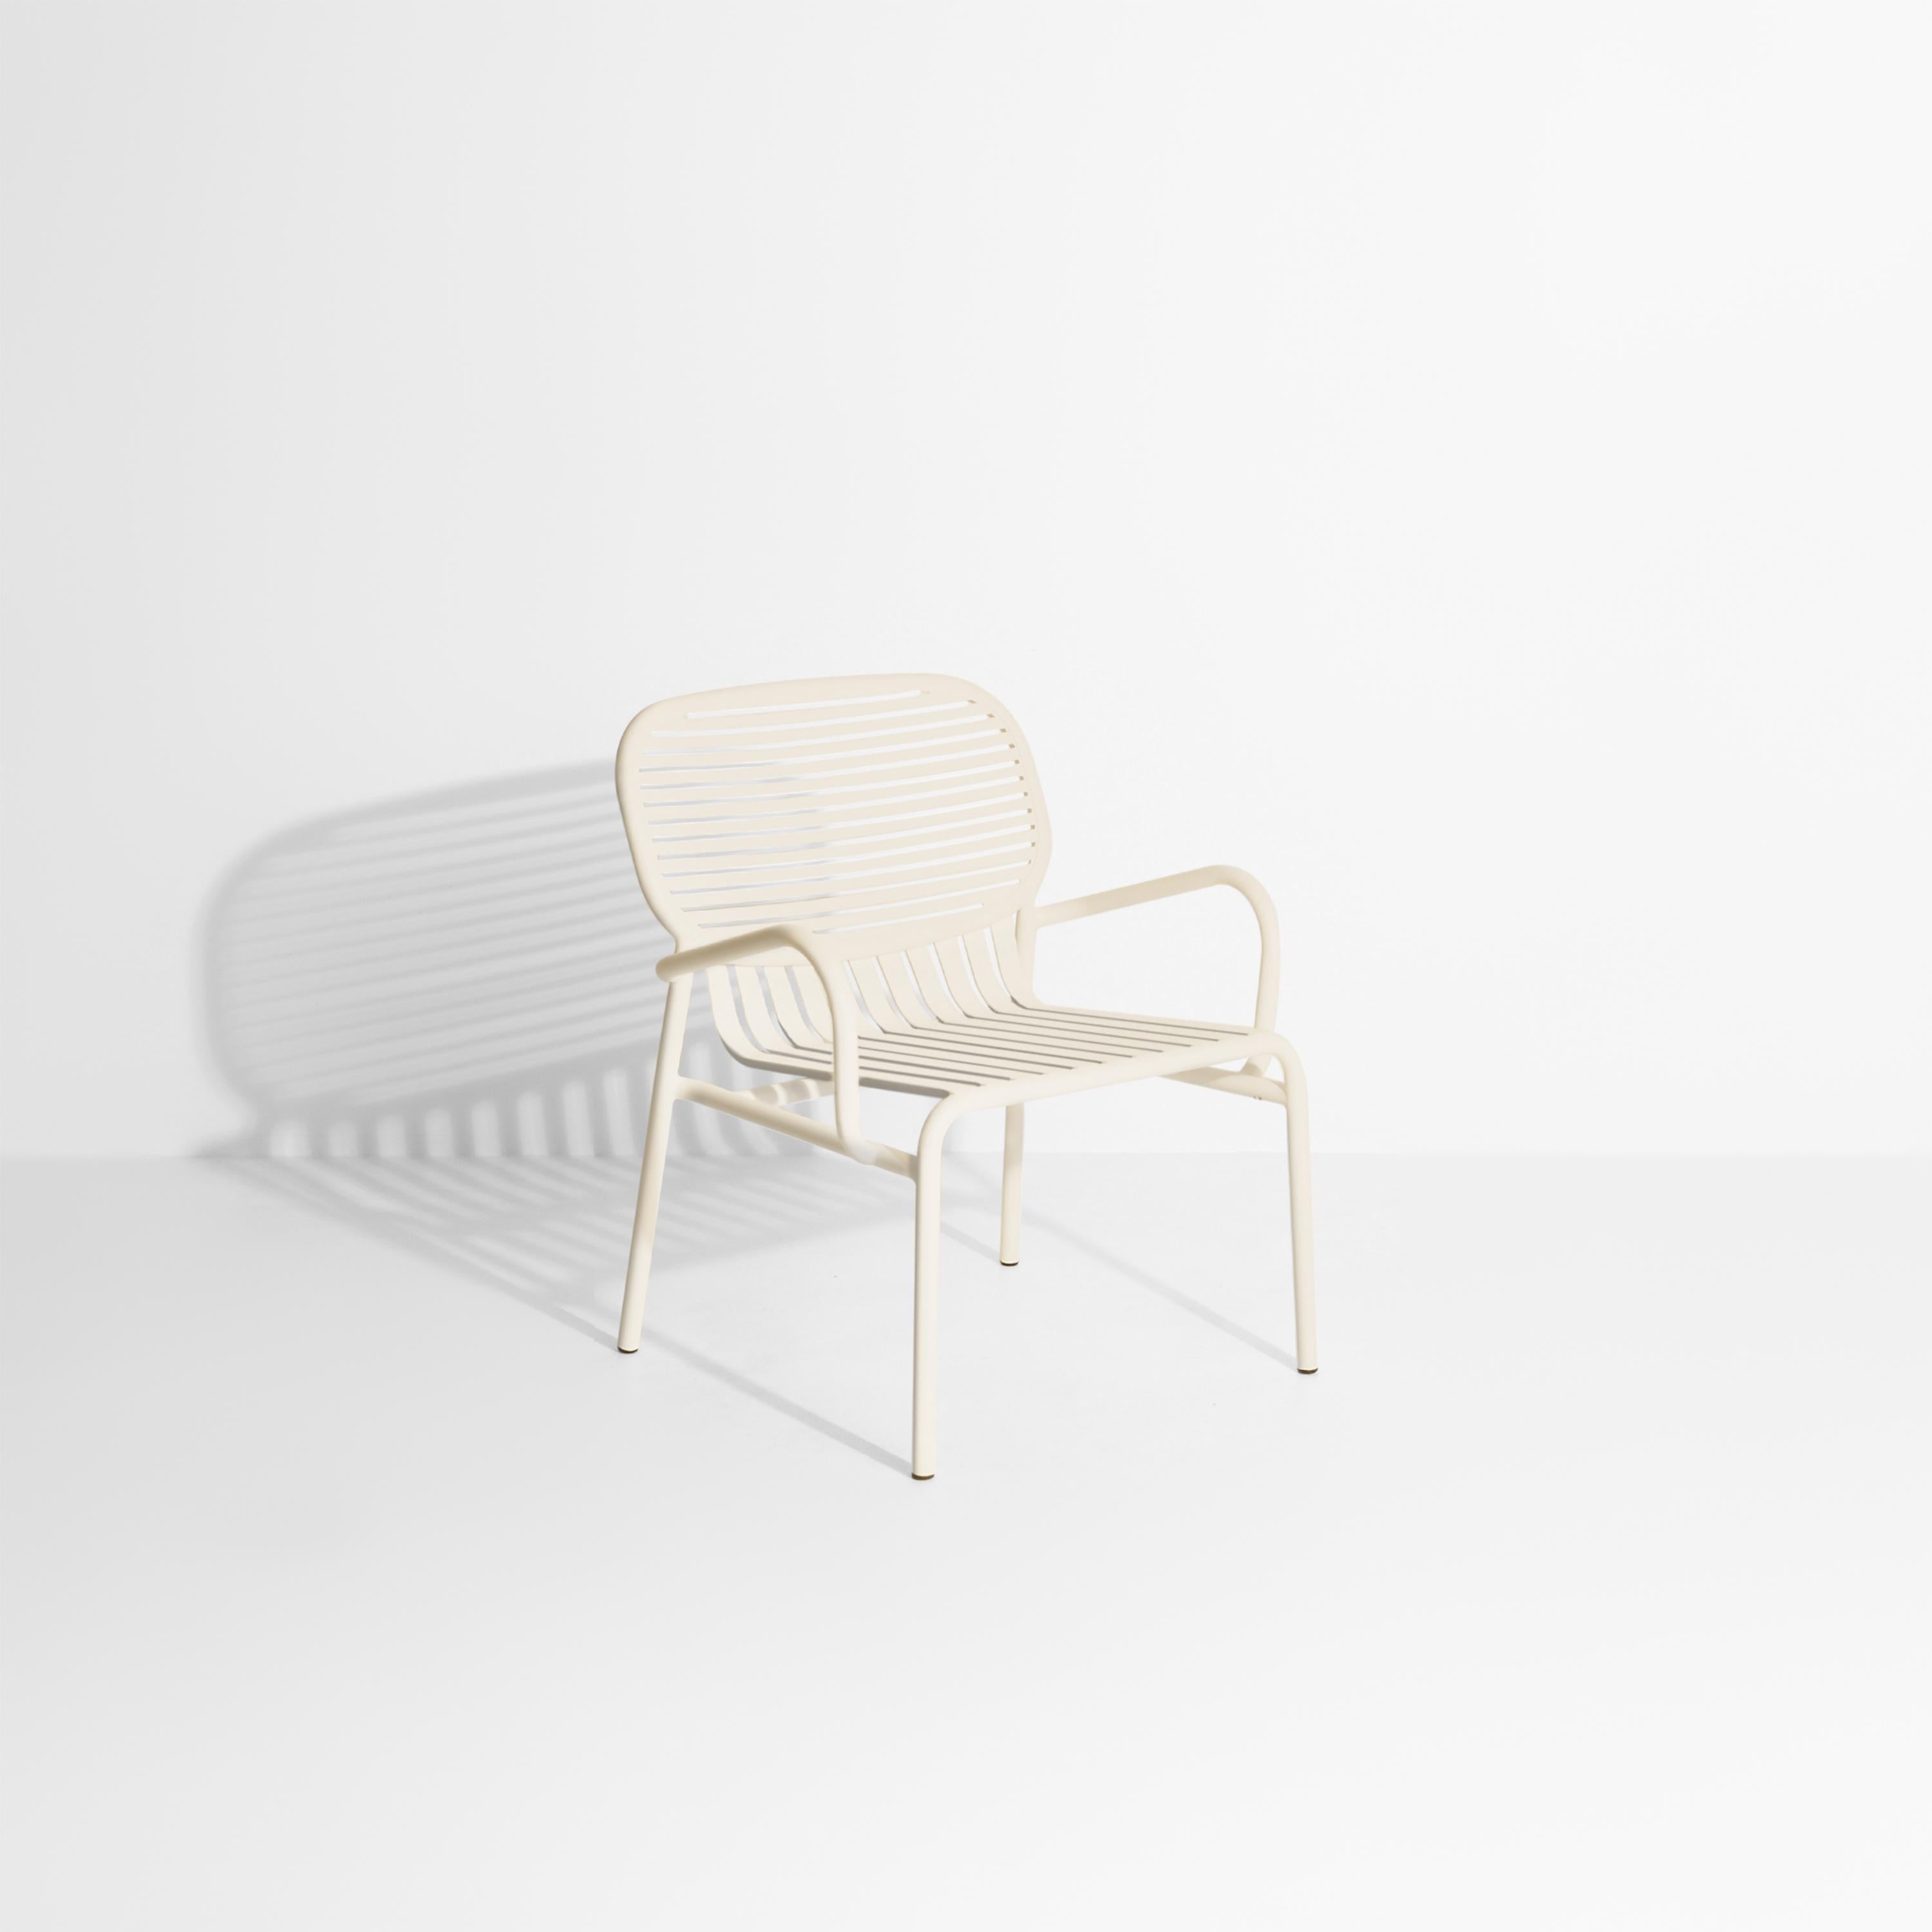 Petite Friture Wochenend-Sessel aus elfenbeinfarbenem Aluminium von Studio BrichetZiegler, 2017

Die Week-End-Kollektion besteht aus einer kompletten Palette von Außenmöbeln mit mattierter Epoxidharzlackierung mit Aluminiummaserung, die 18